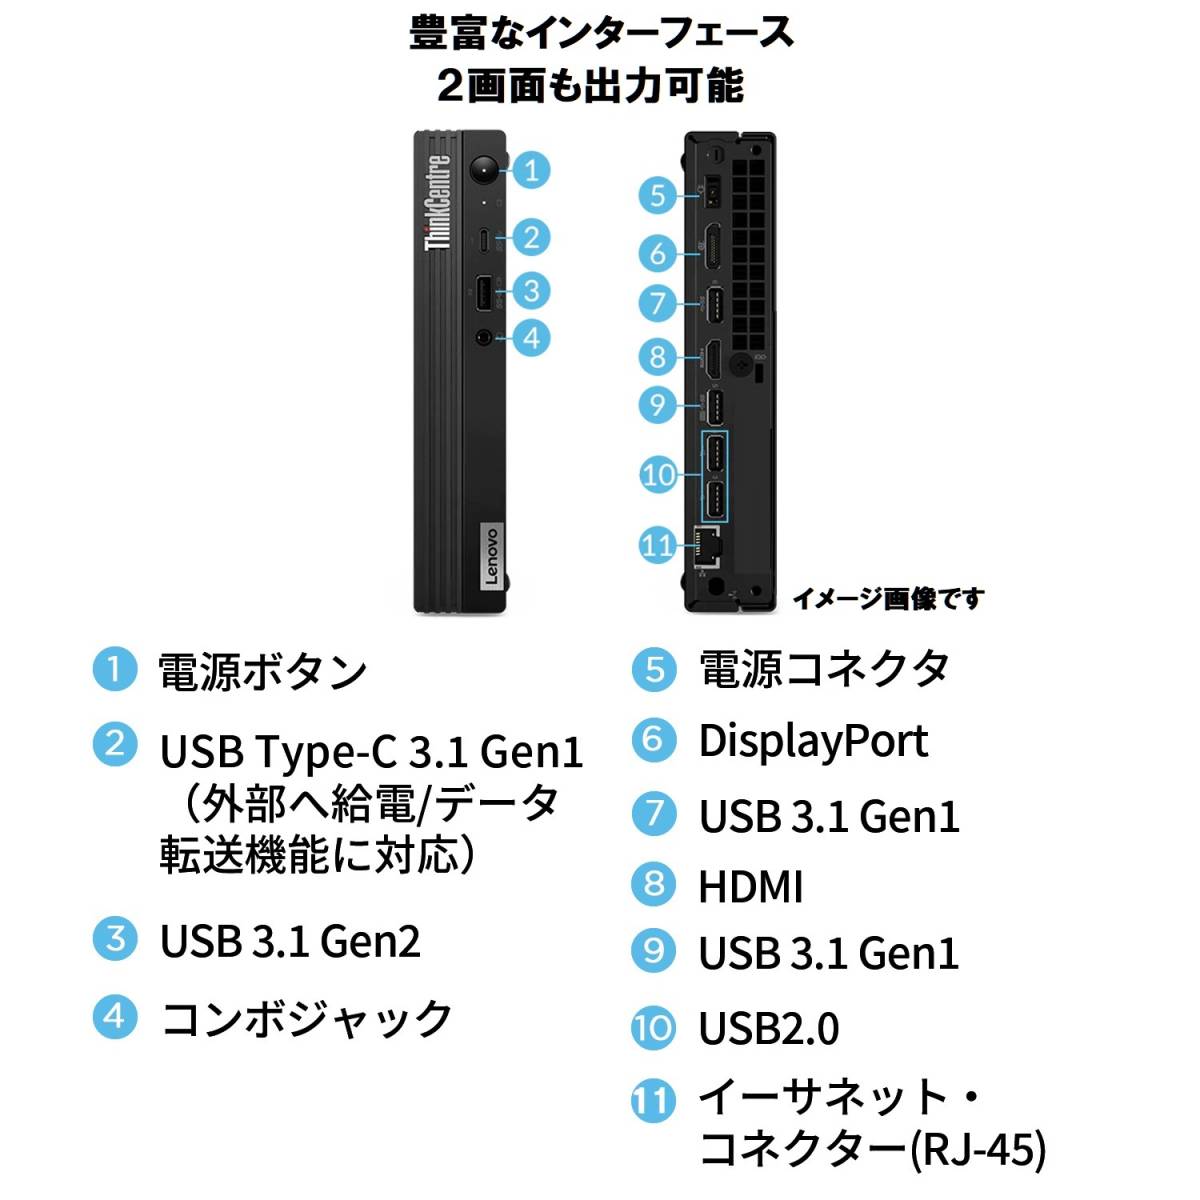 [ квитанция о получении возможно ] новый товар нераспечатанный (512GB+16GB) Lenovo ThinkCentre M75q Tiny Gen2 Ryzen5 PRO 5650GE/512GB SSD/16GB память 